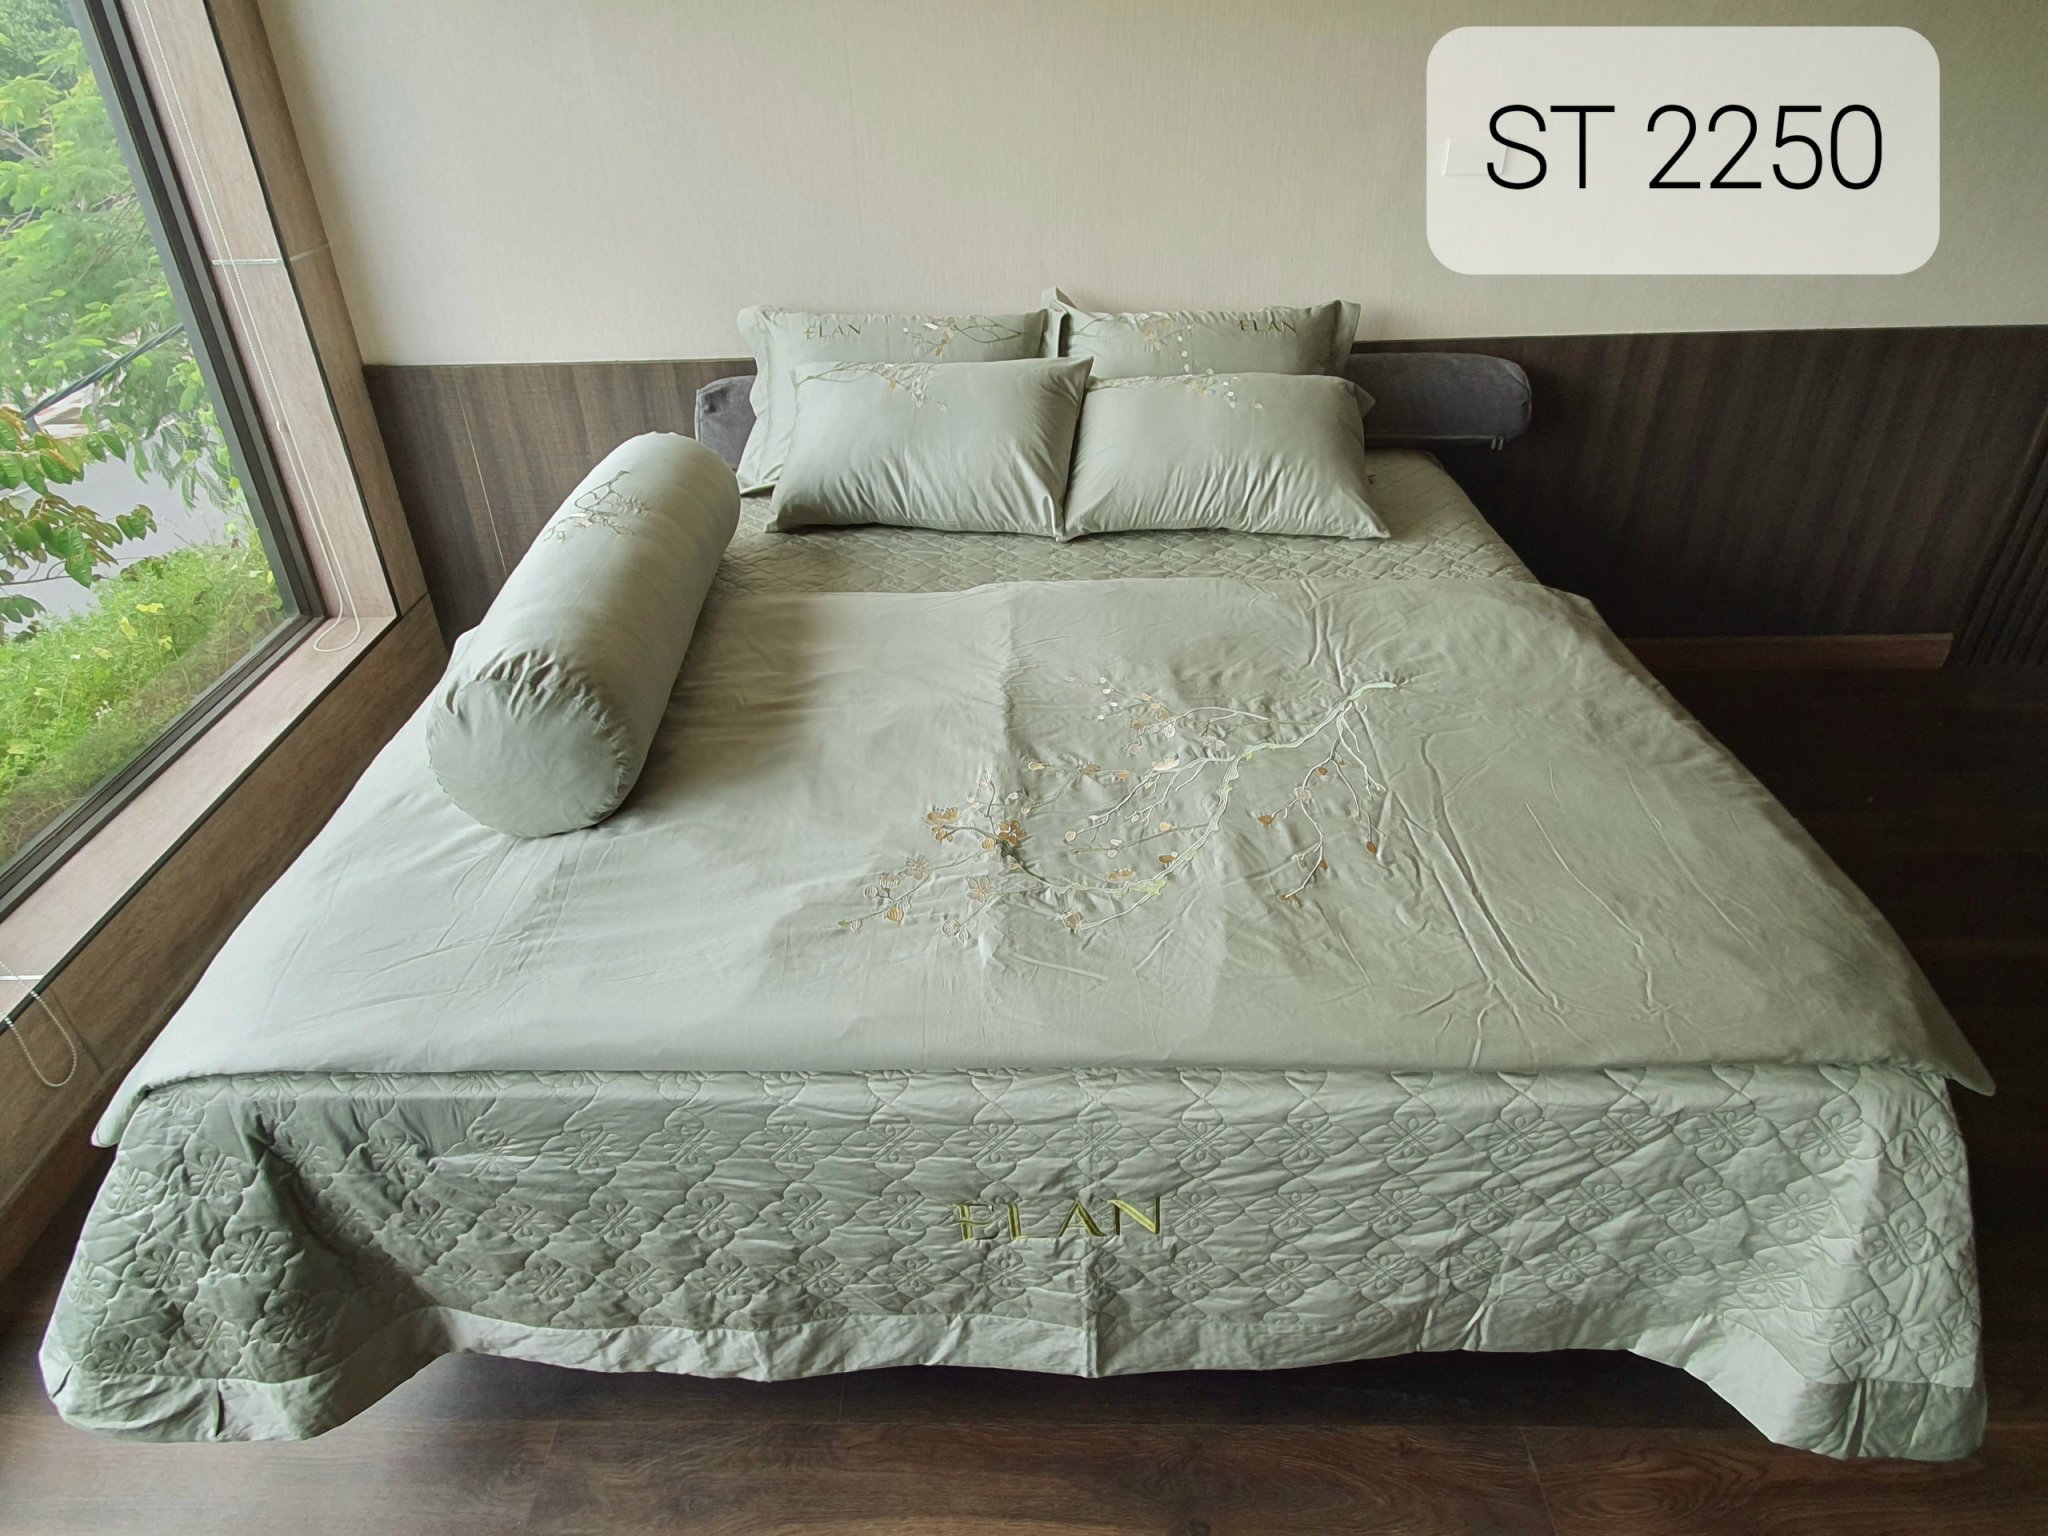 Bộ chăn ga phủ gối 7 món ELan Hàn Quốc cao cấp vải cotton satin DB ST2250 gồm: Ga phủ, chăn chần bông 4 mùa, 4 vỏ gối nằm, 1 vỏ gối ôm